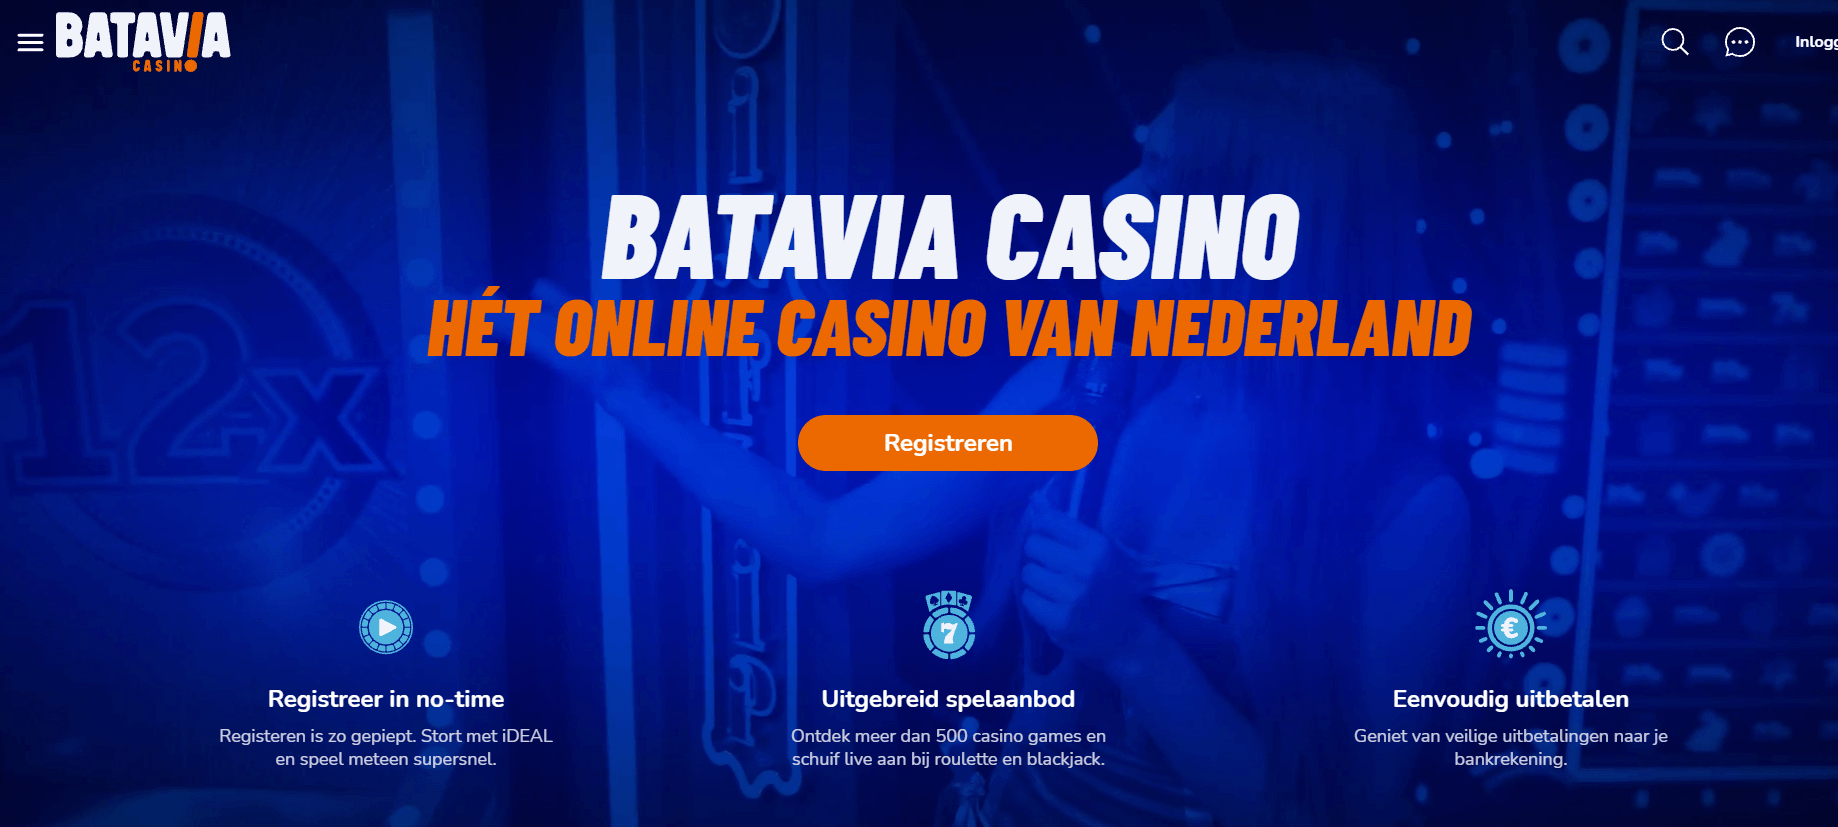 Batavia Casino Homepagina